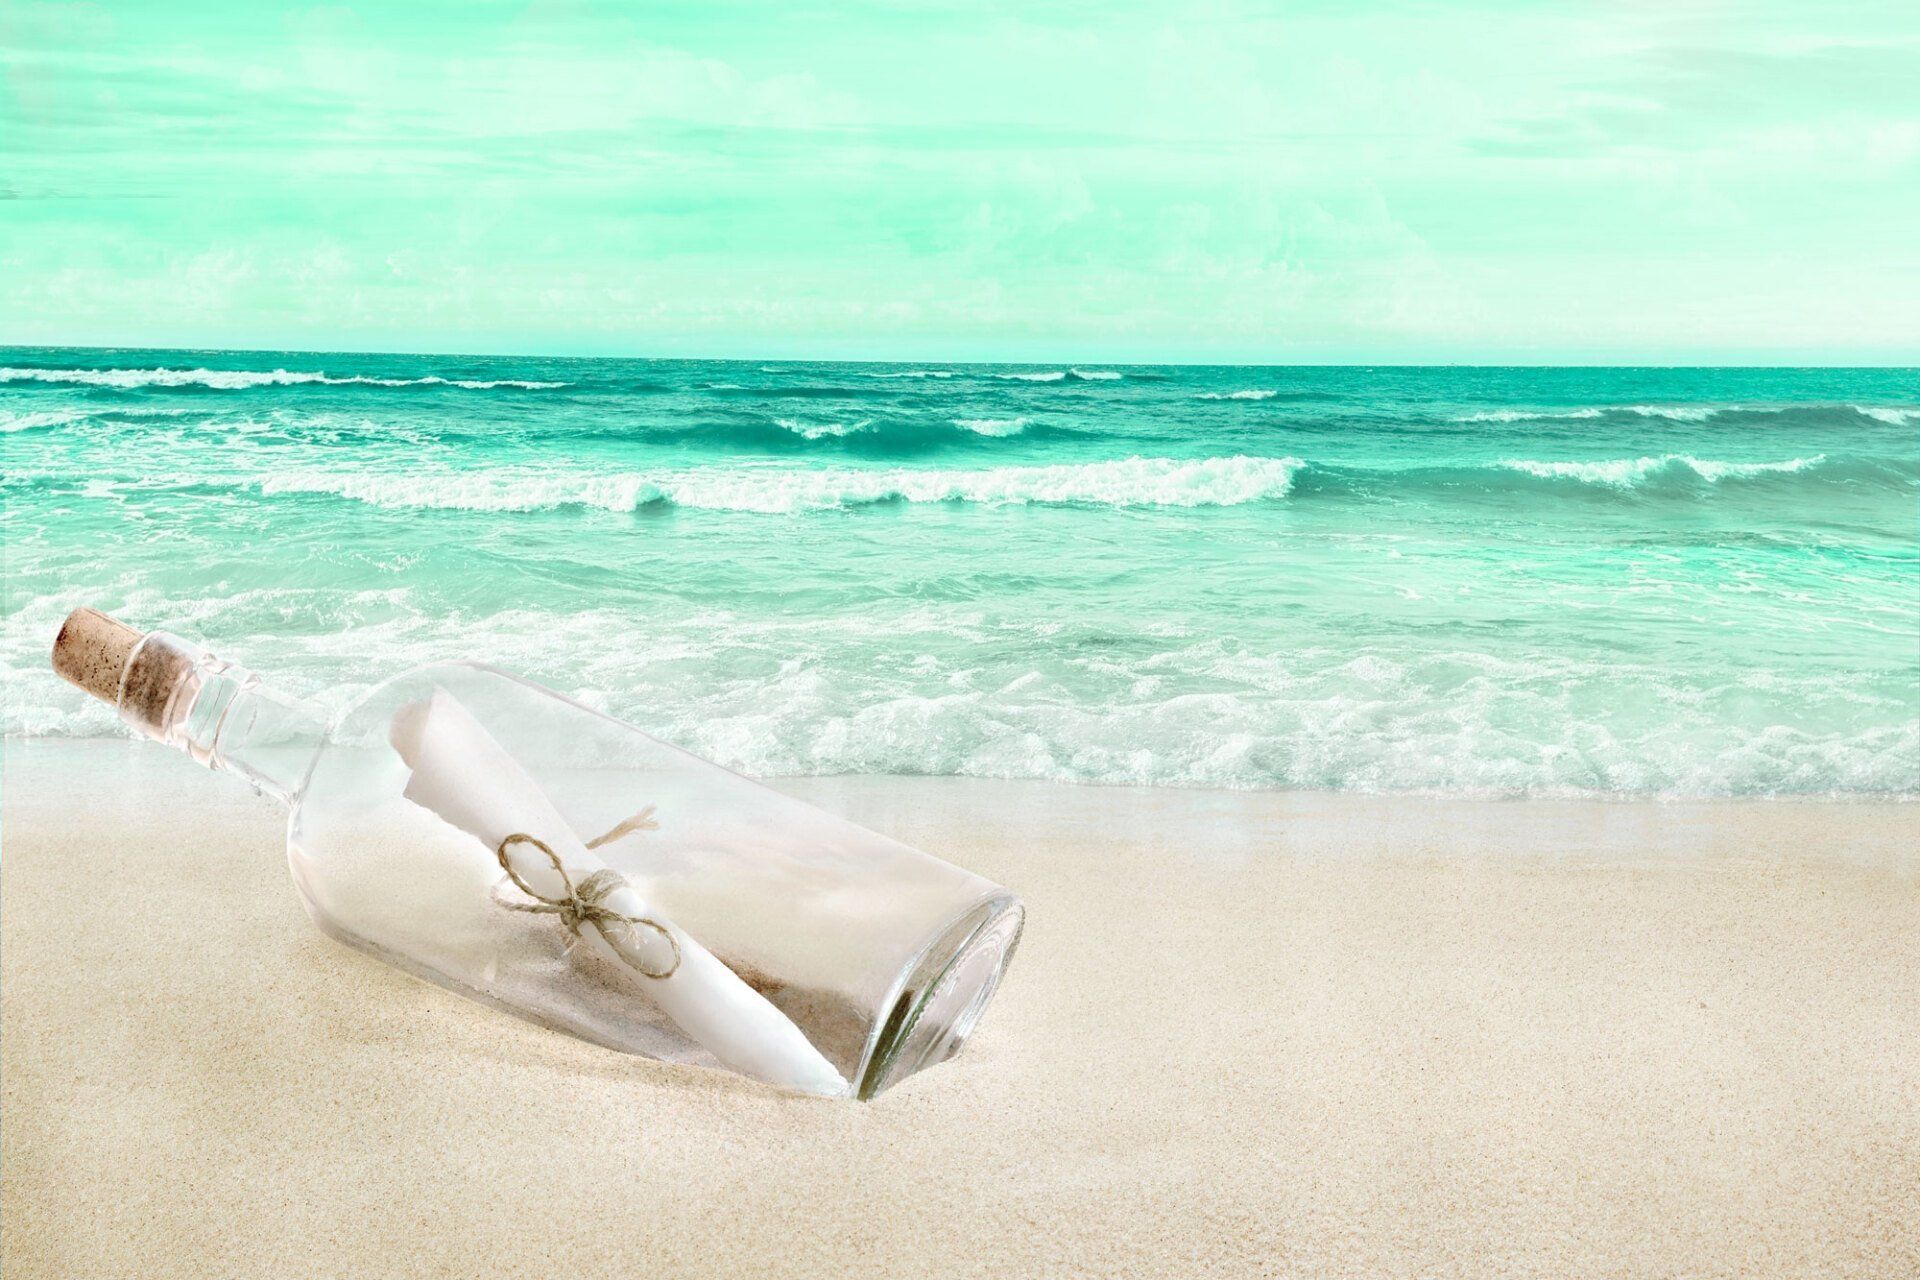 messaggio in una bottiglia di vetro chiusa con tappo di sughero, ancorata sulla spiaggia in riva ad un mare mosso sullo sfondo